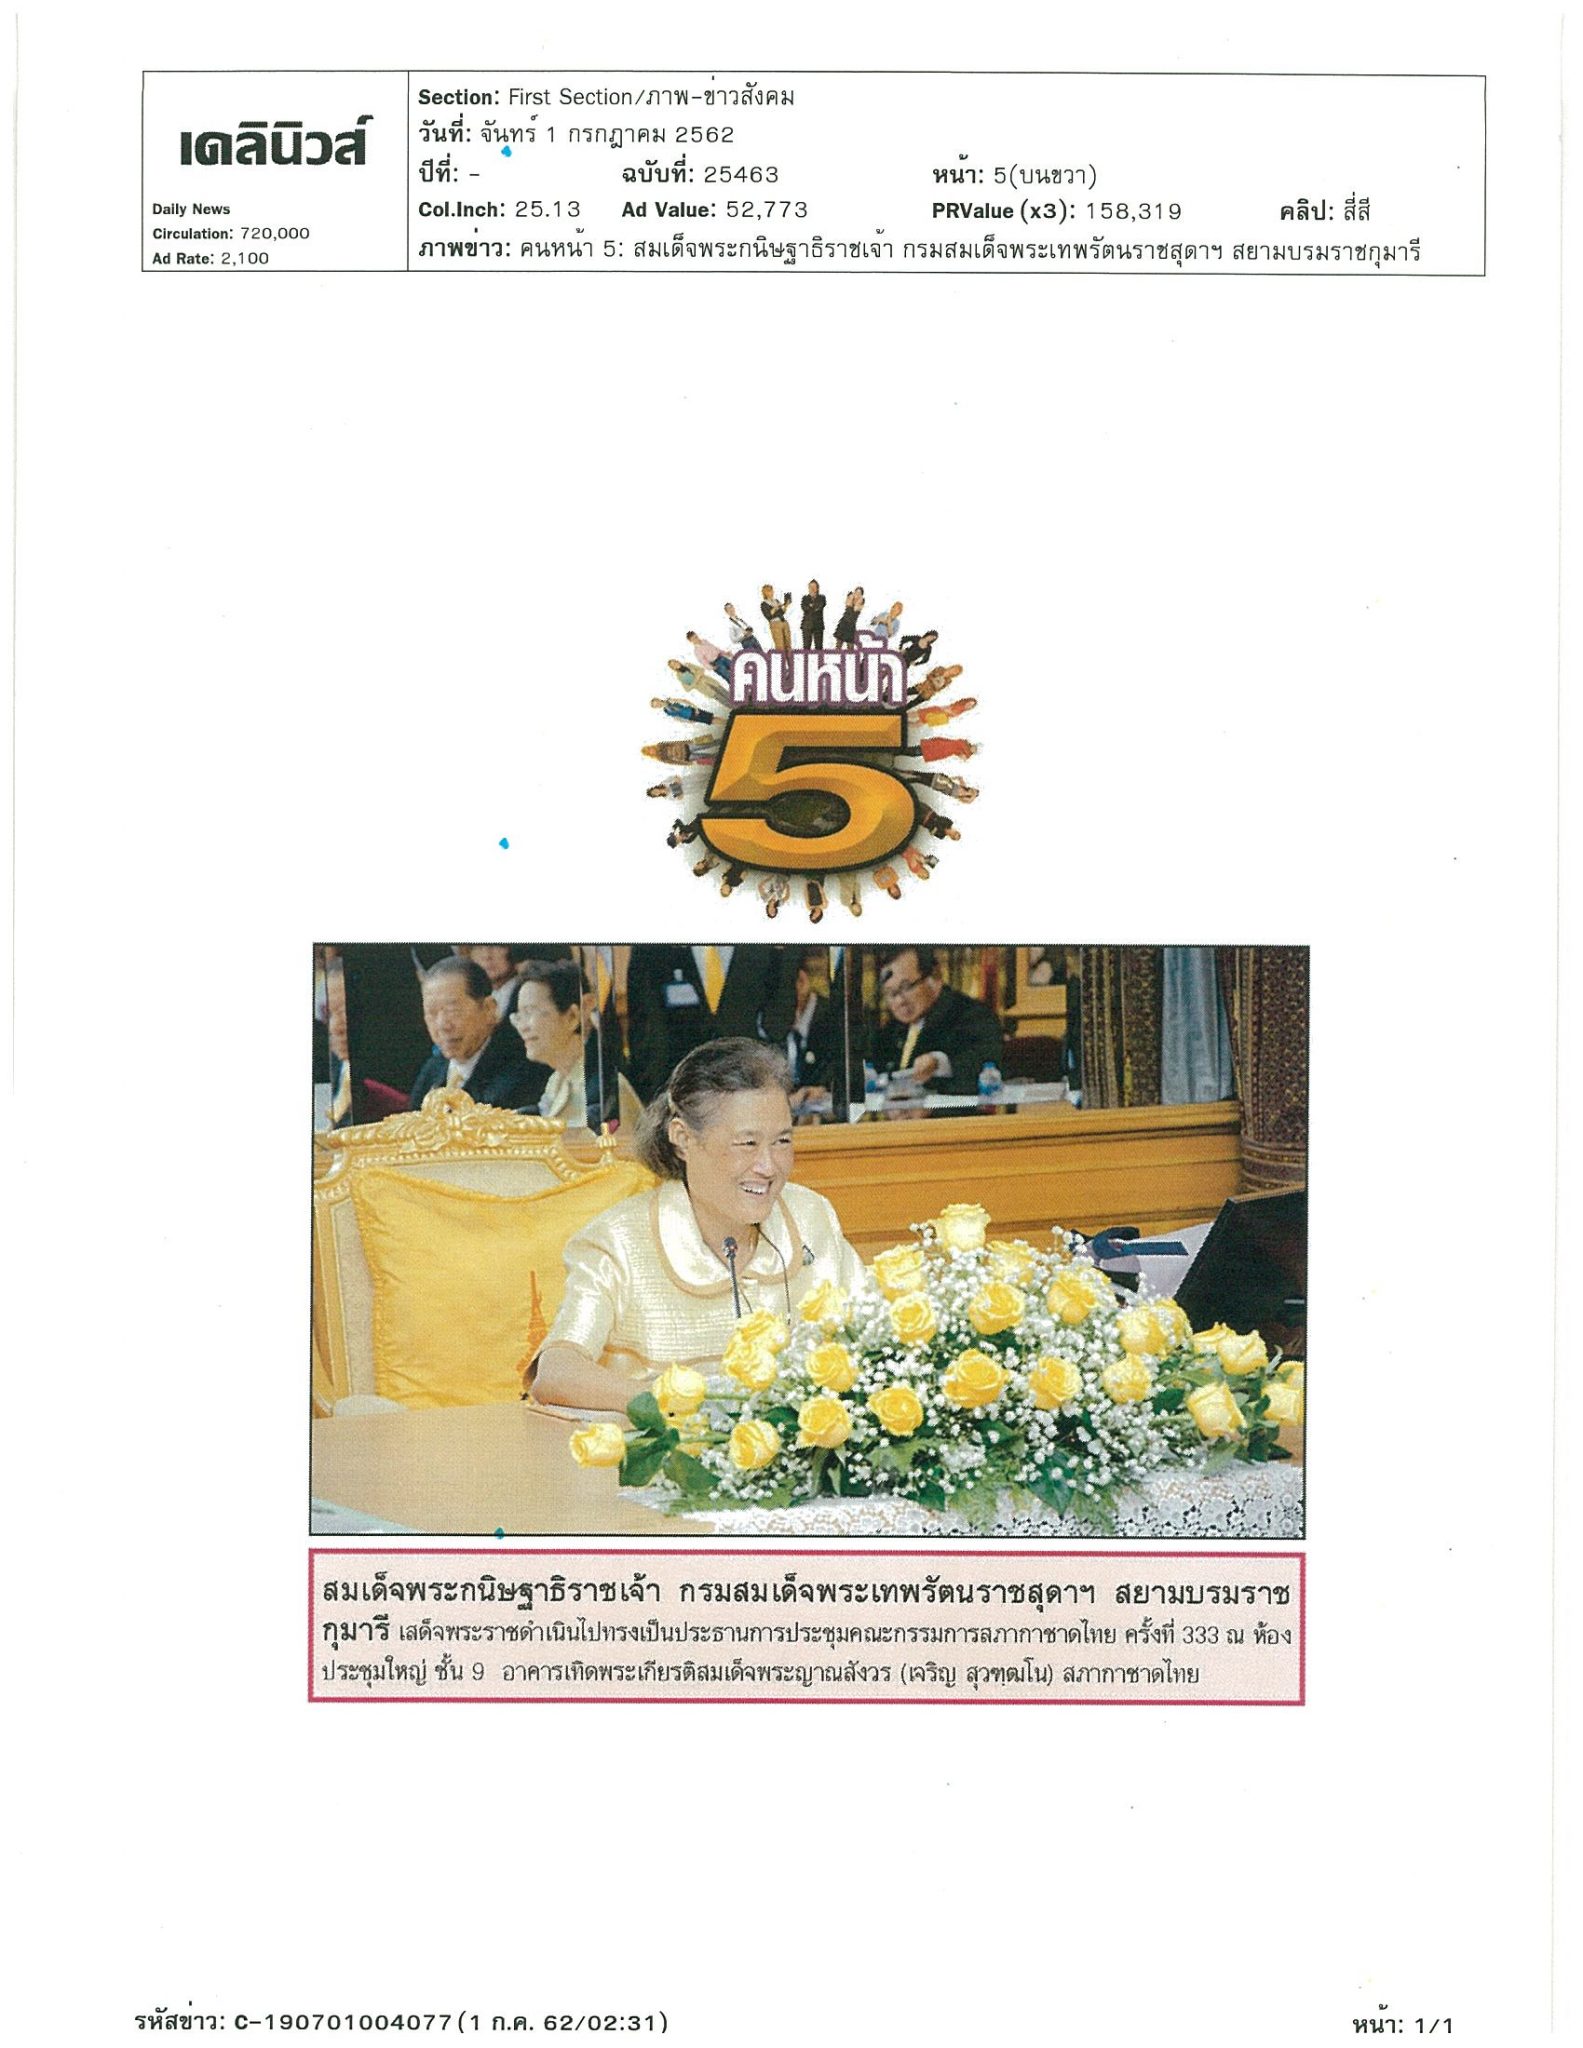 ประชุมคณะกรรมการสภากาชาดไทย ครั้งที่ 333